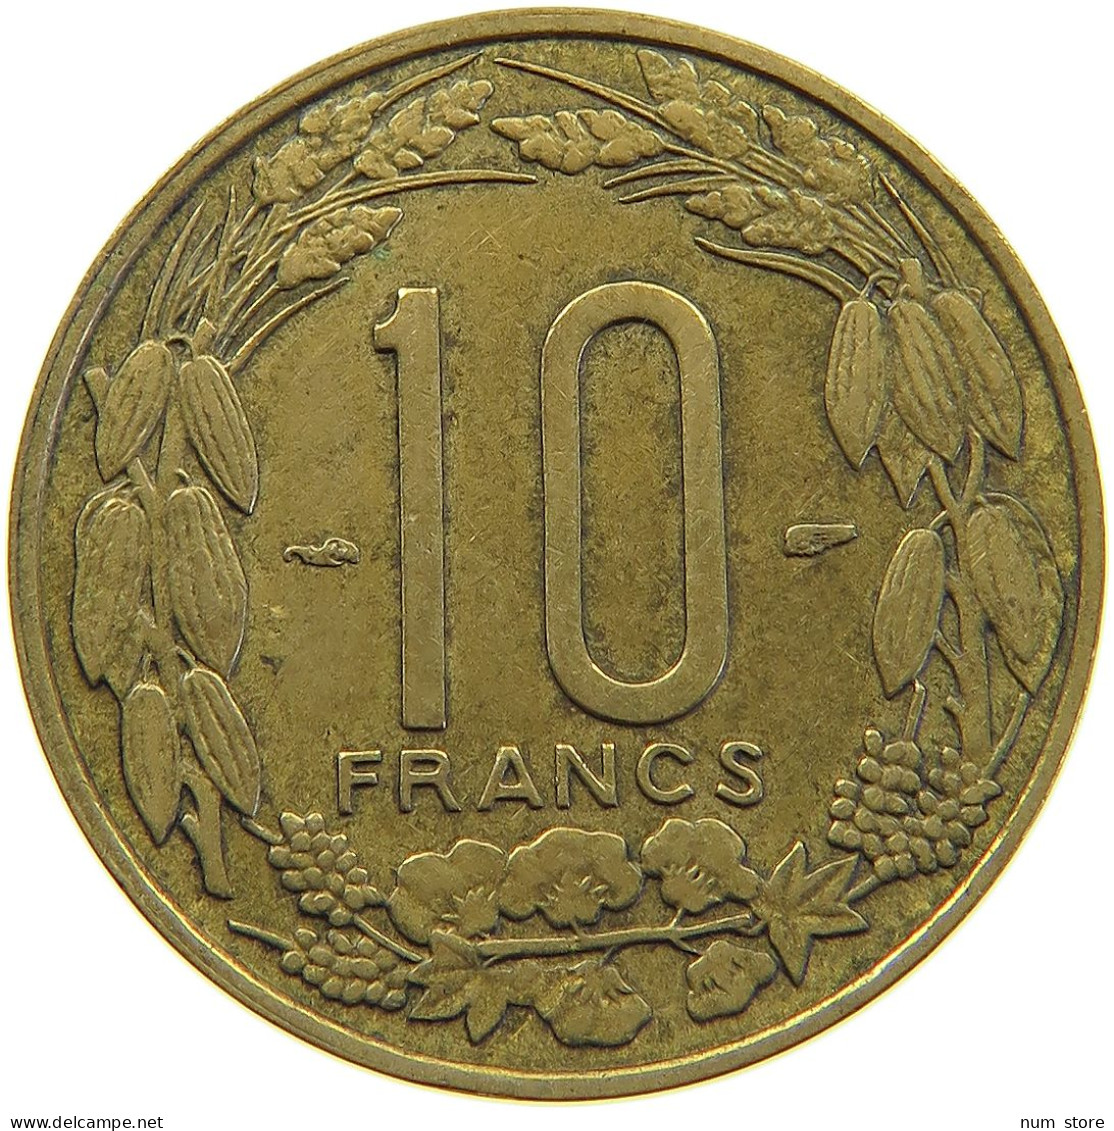 CAMEROON 10 FRANCS 1958  #c067 0365 - Kamerun